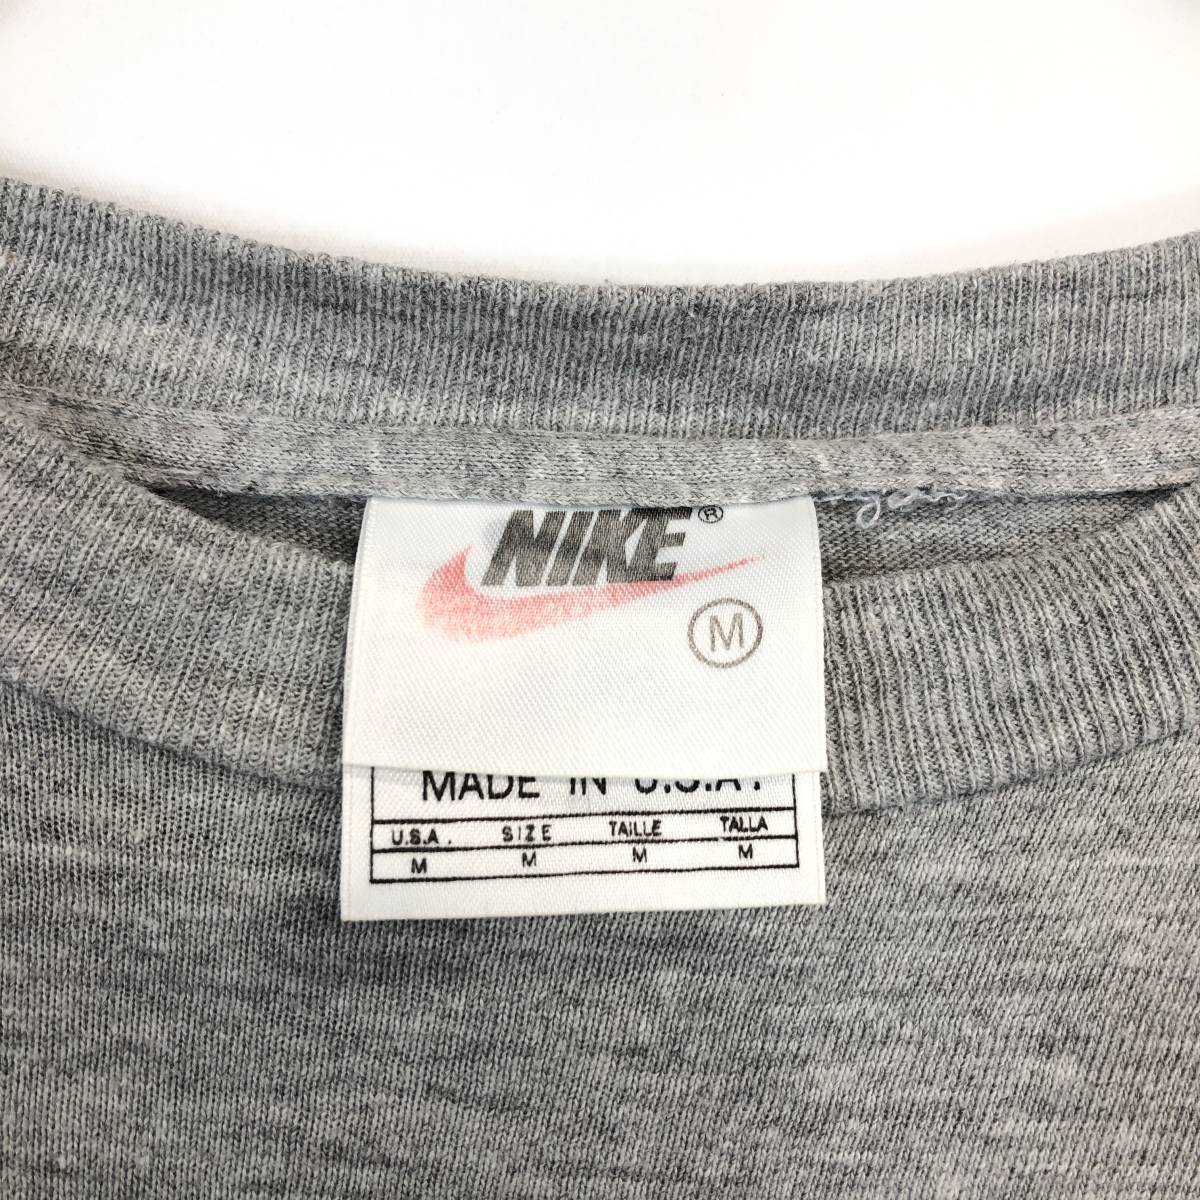 90s USA製 ナイキ NIKE Tシャツ スウォッシュプリント グレー系 Mサイズ